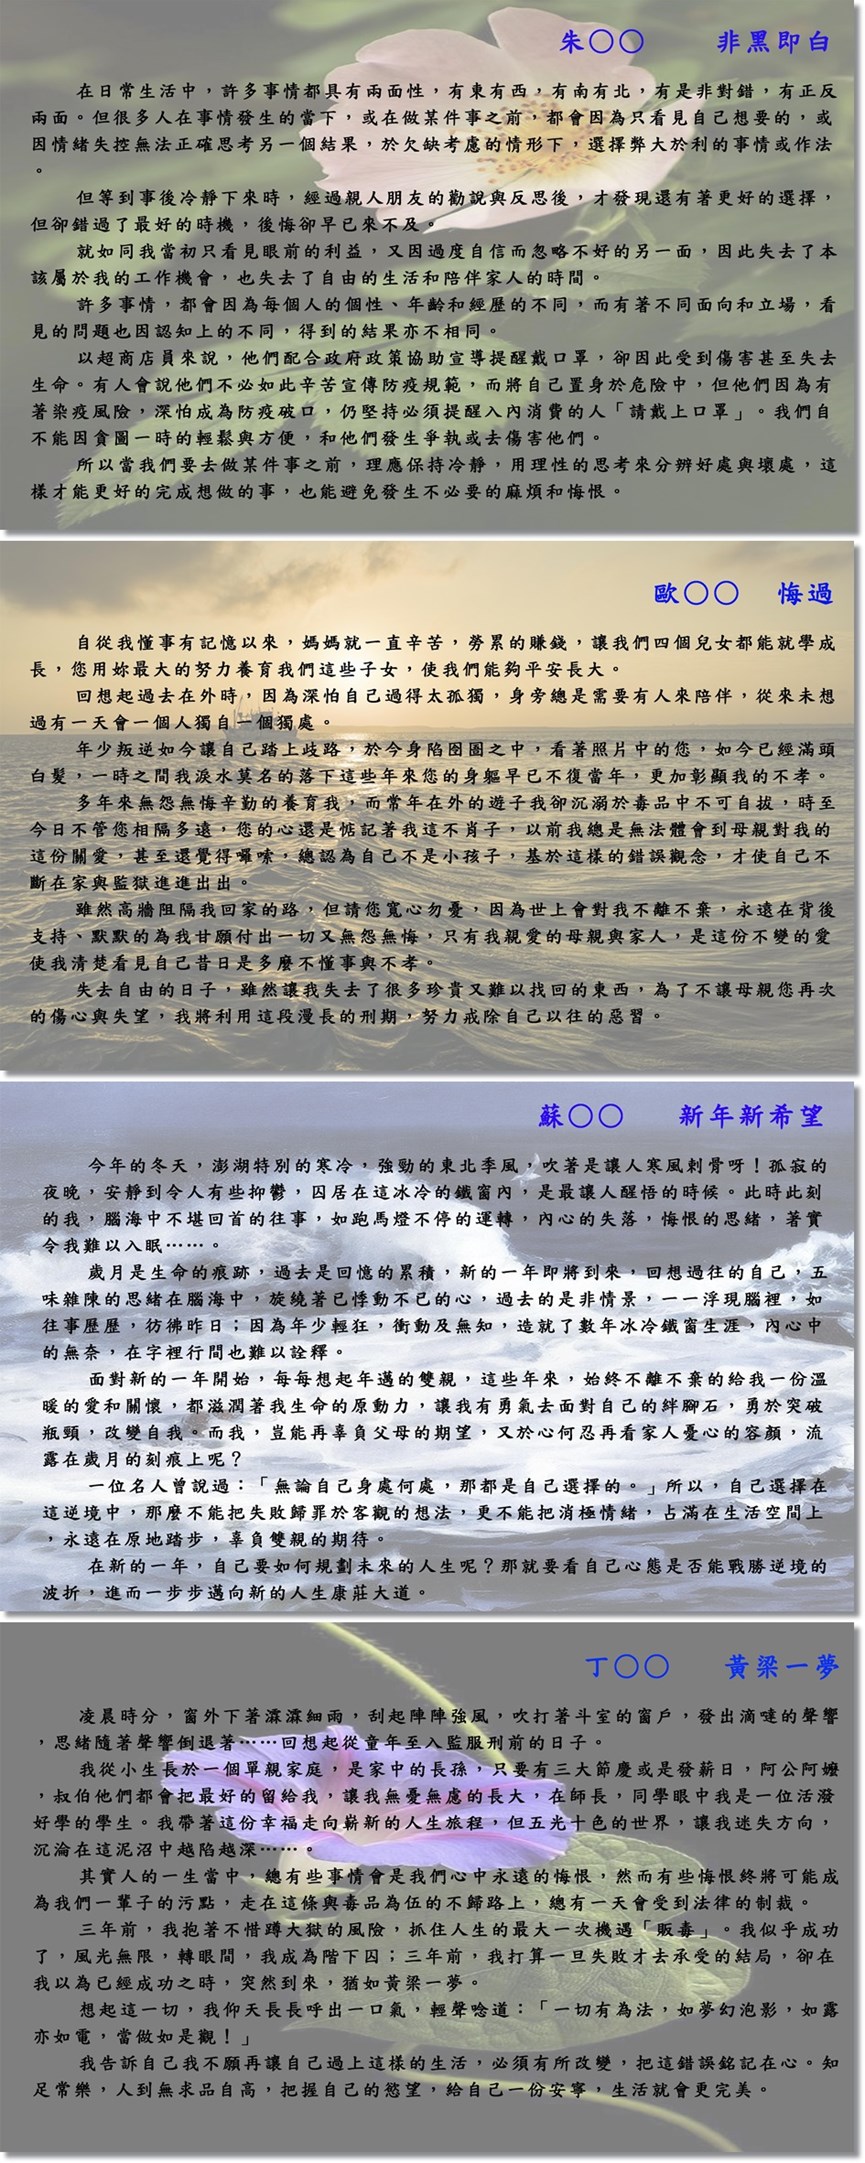 澎鼎雙月刊電子版第214期